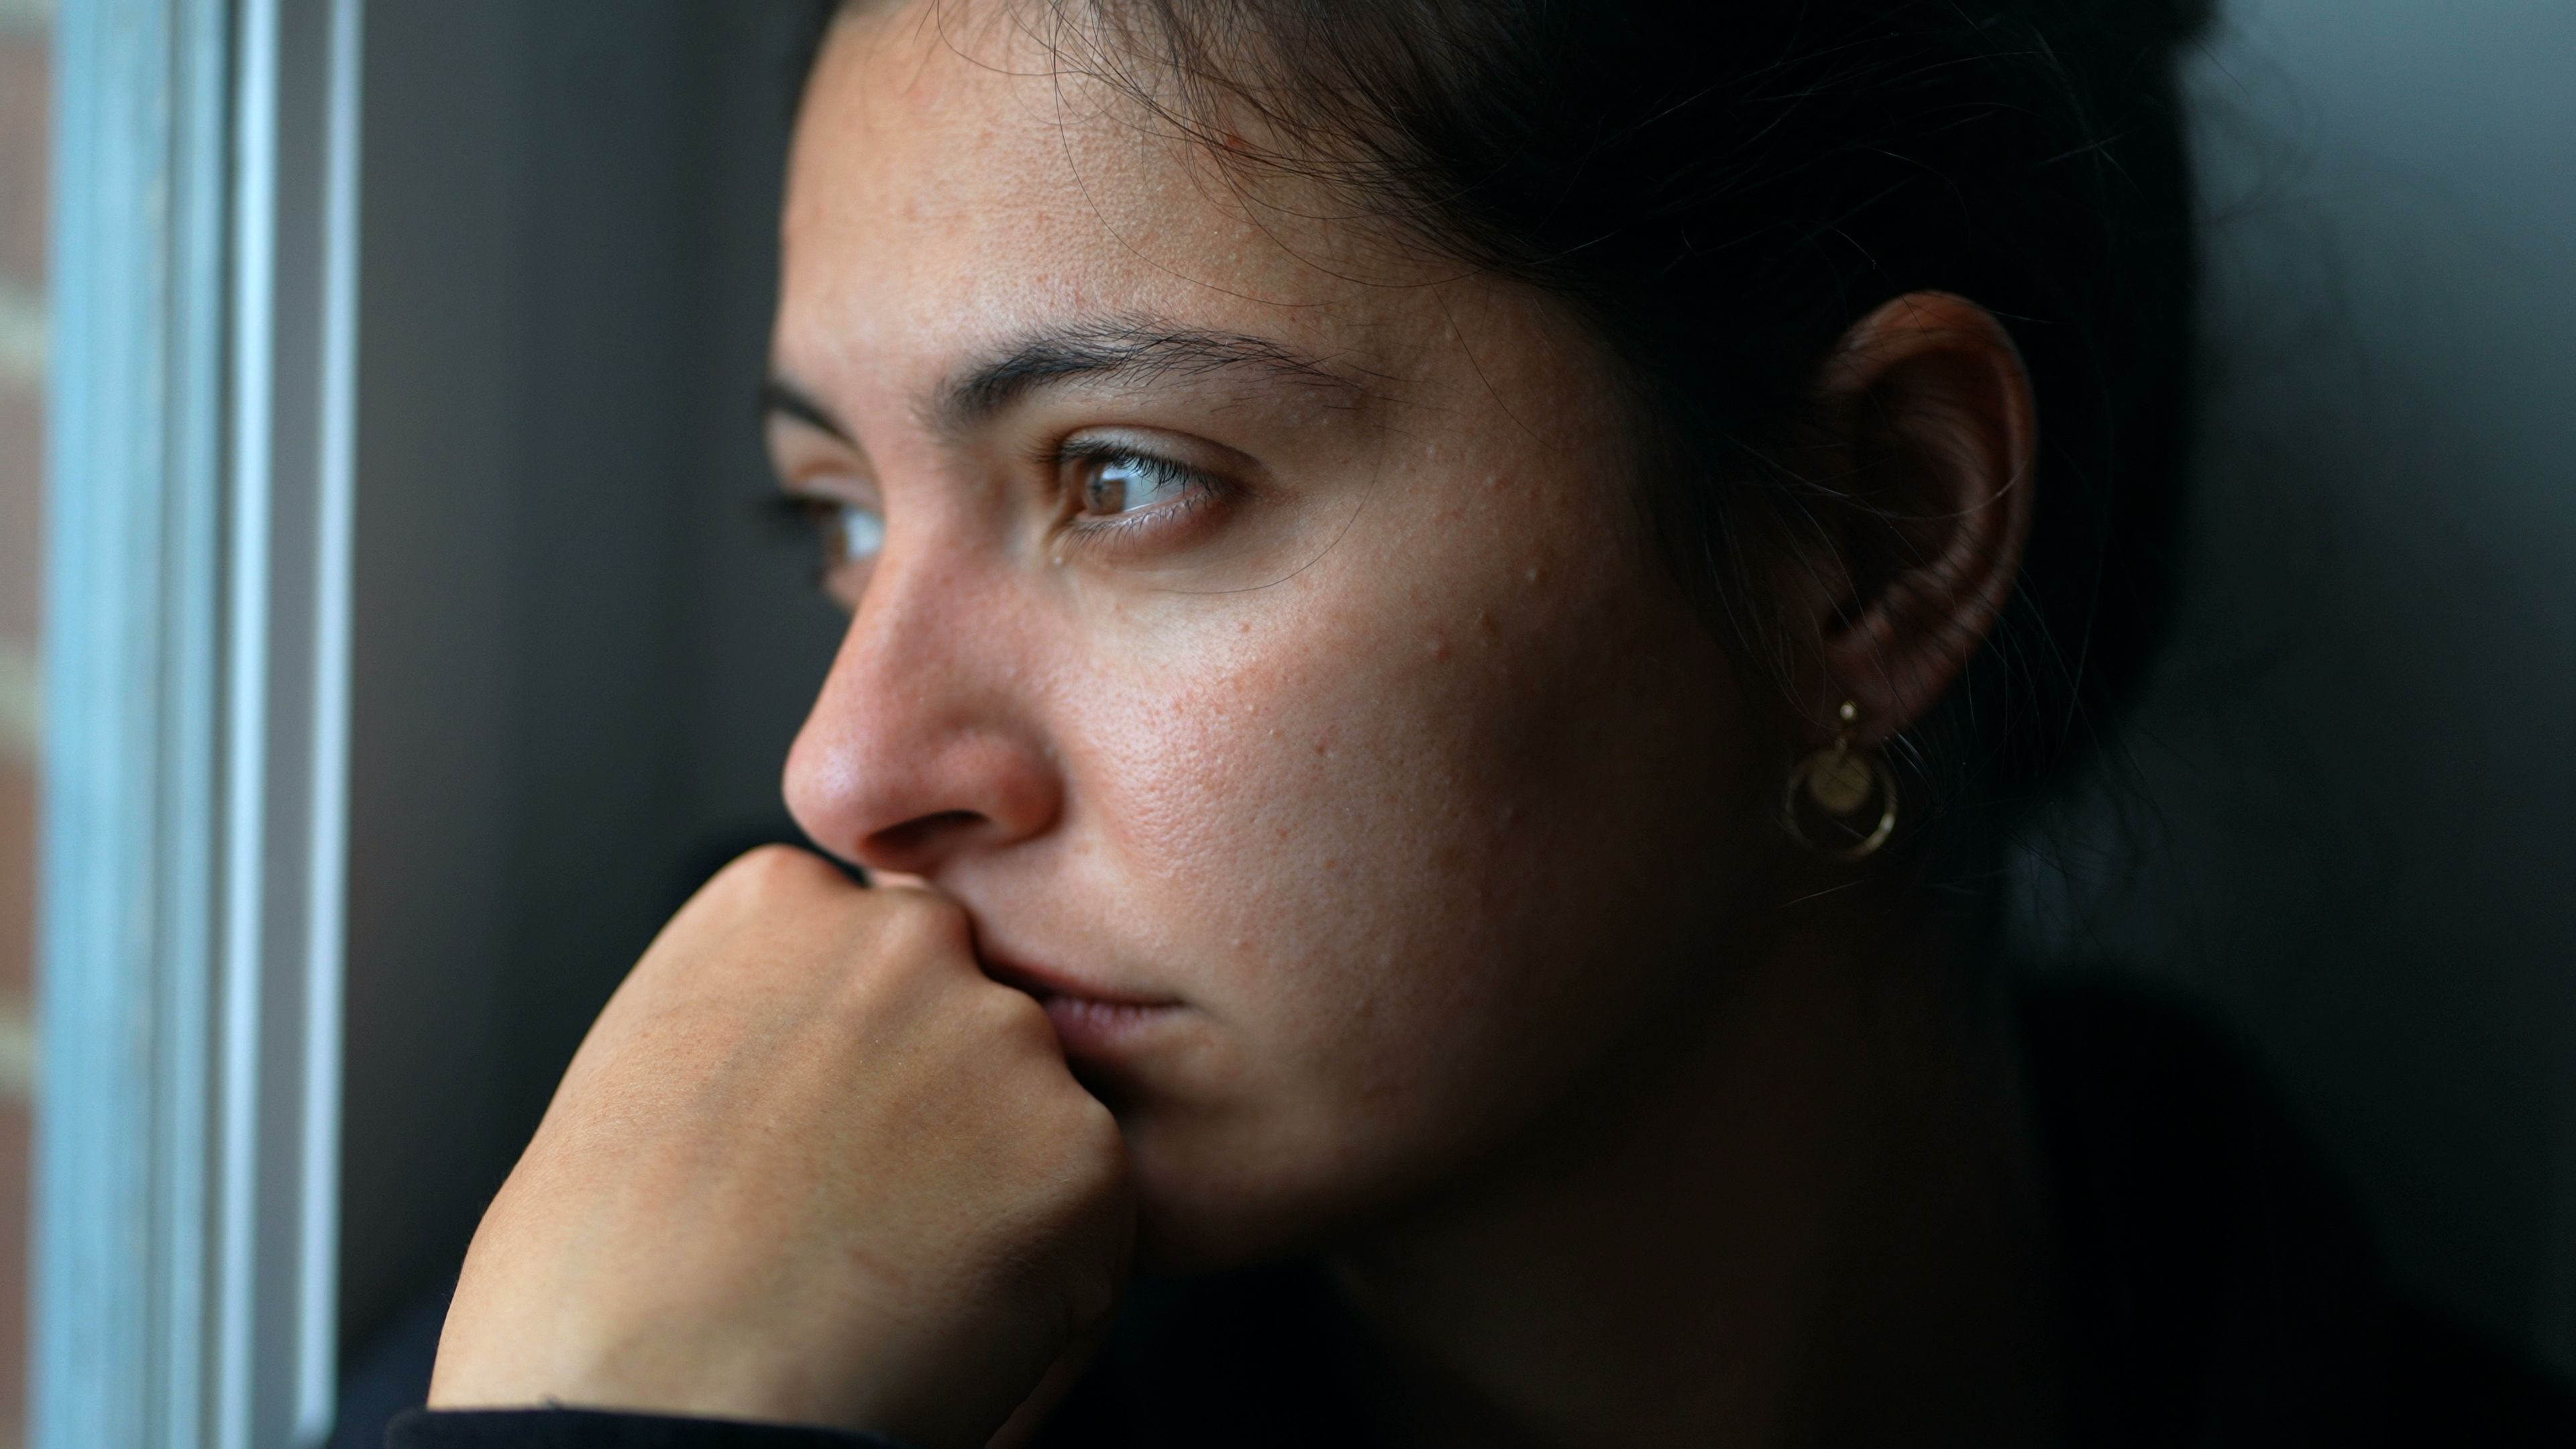 Una mujer con mirada triste | Fuente: Shutterstock